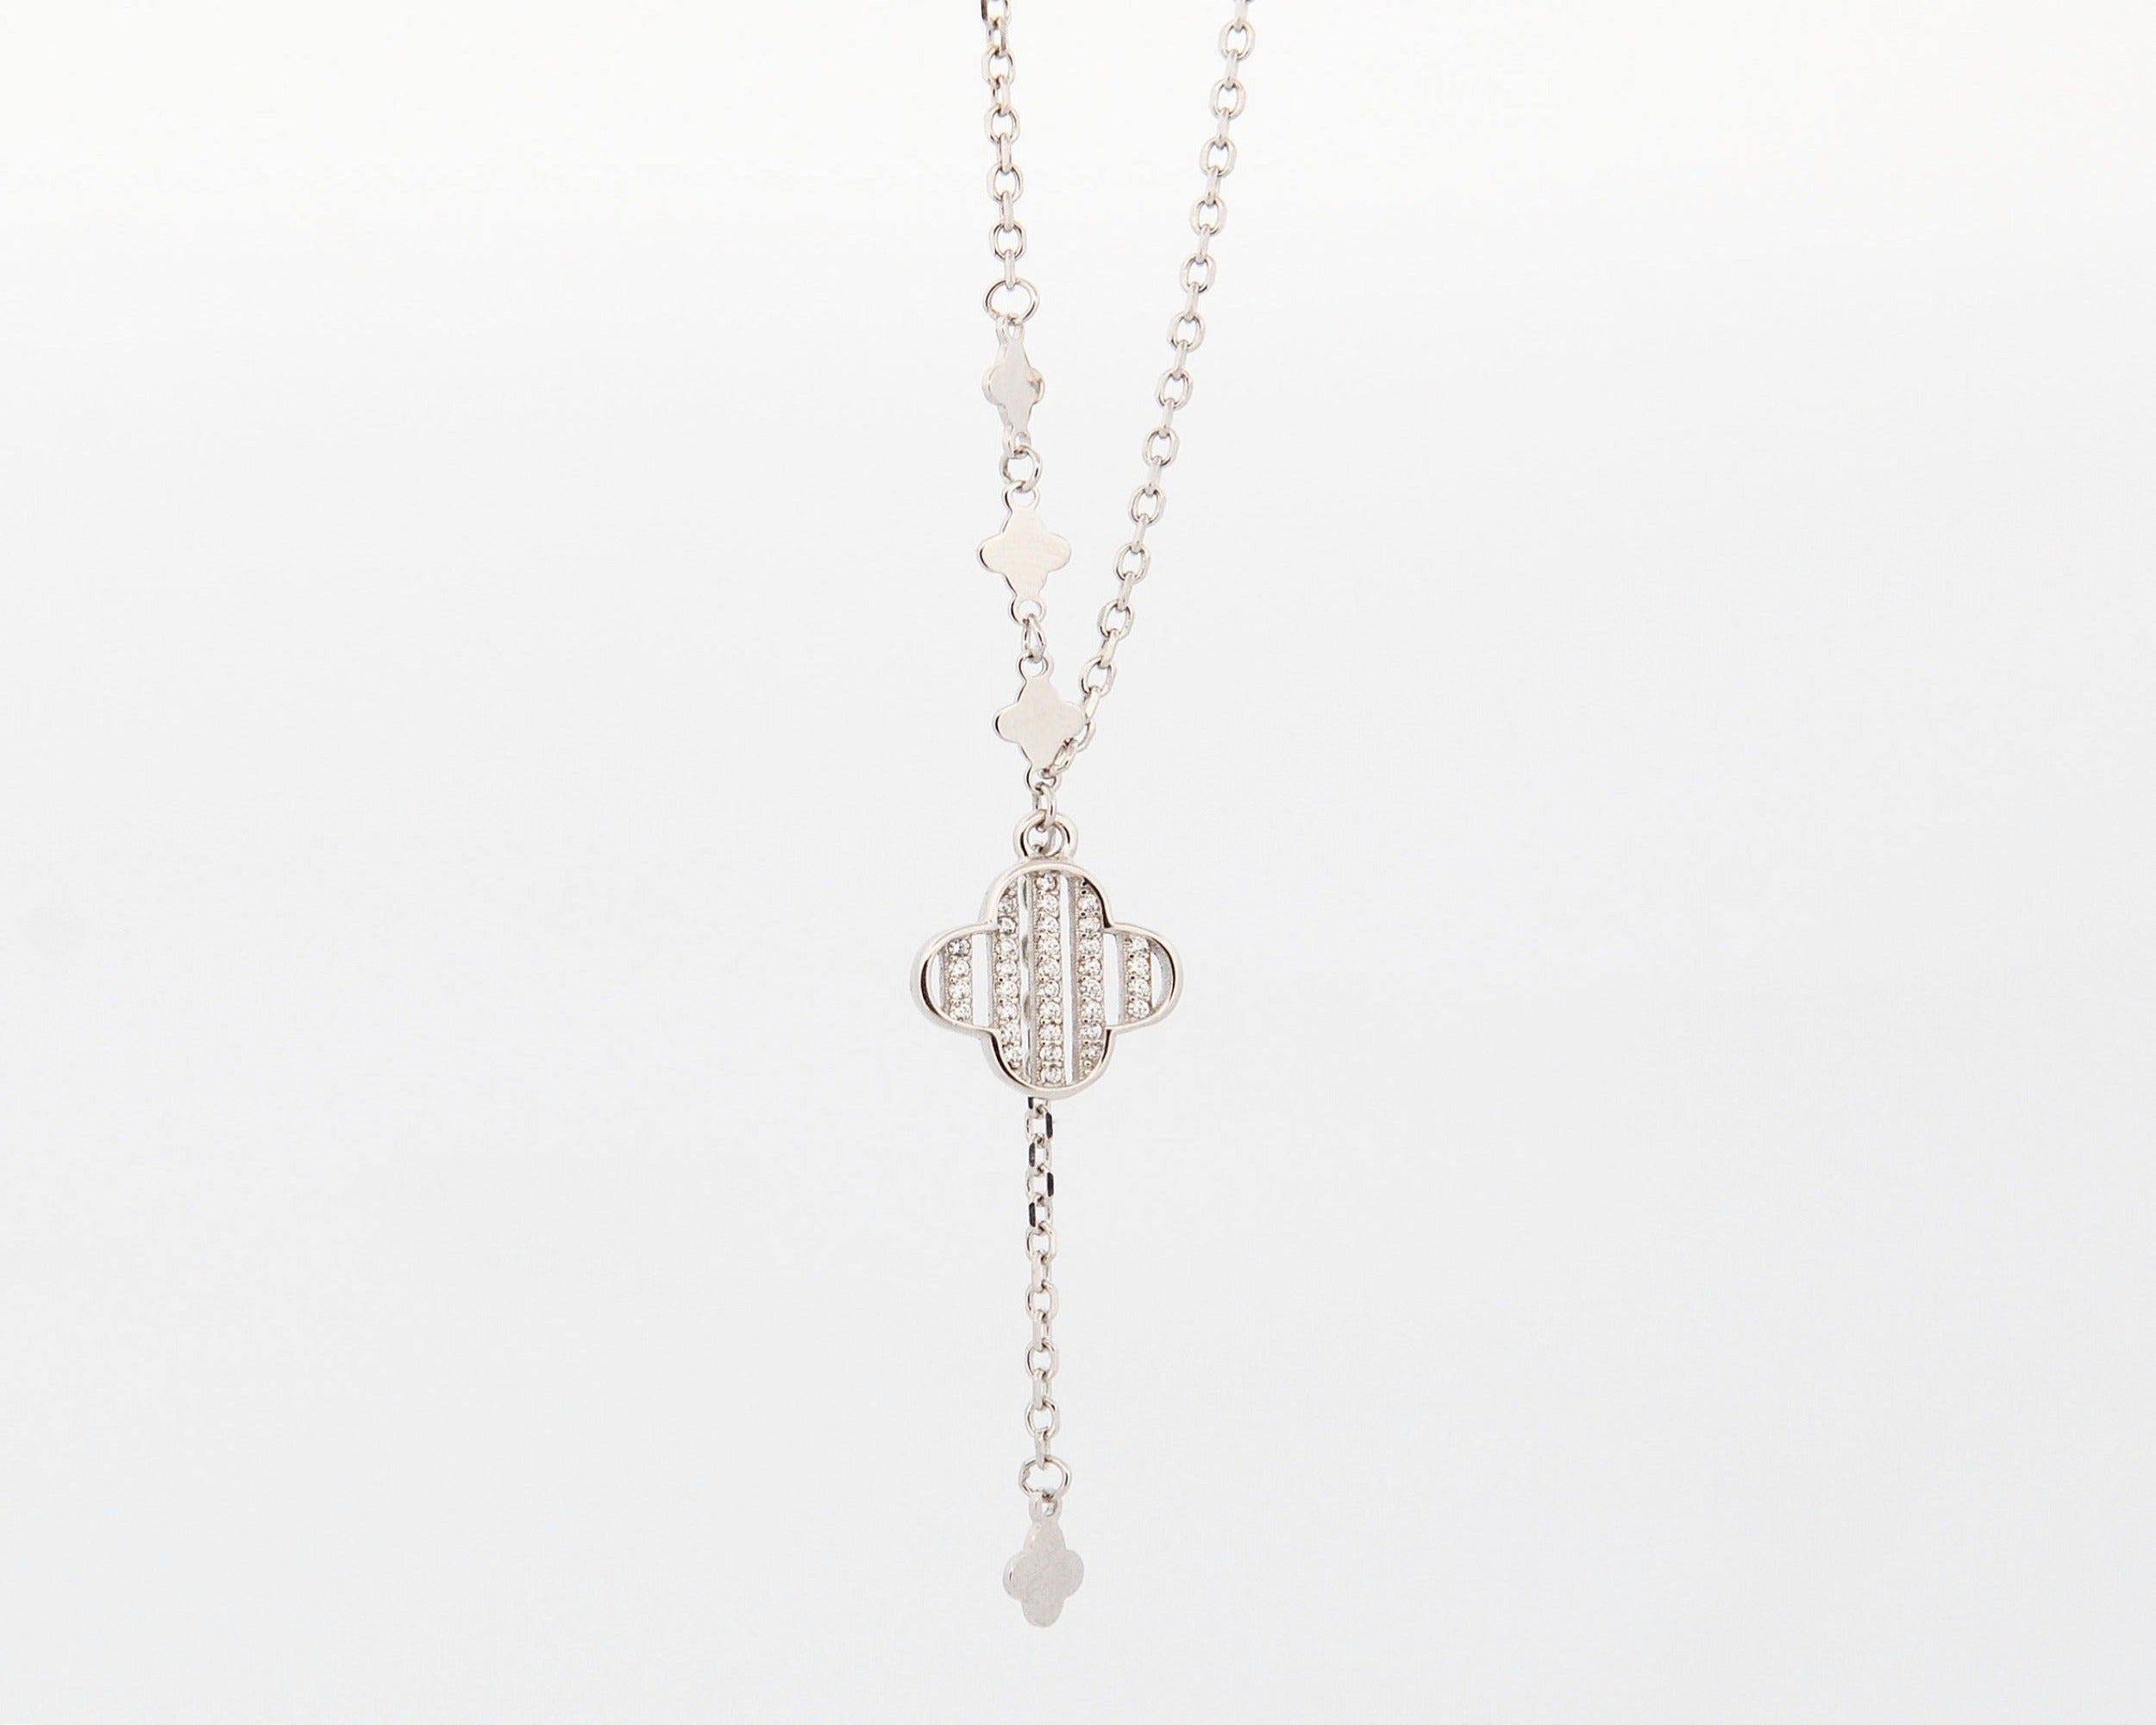 Stříbrný náhrdelník s přívěskem ve stylu Art Deco